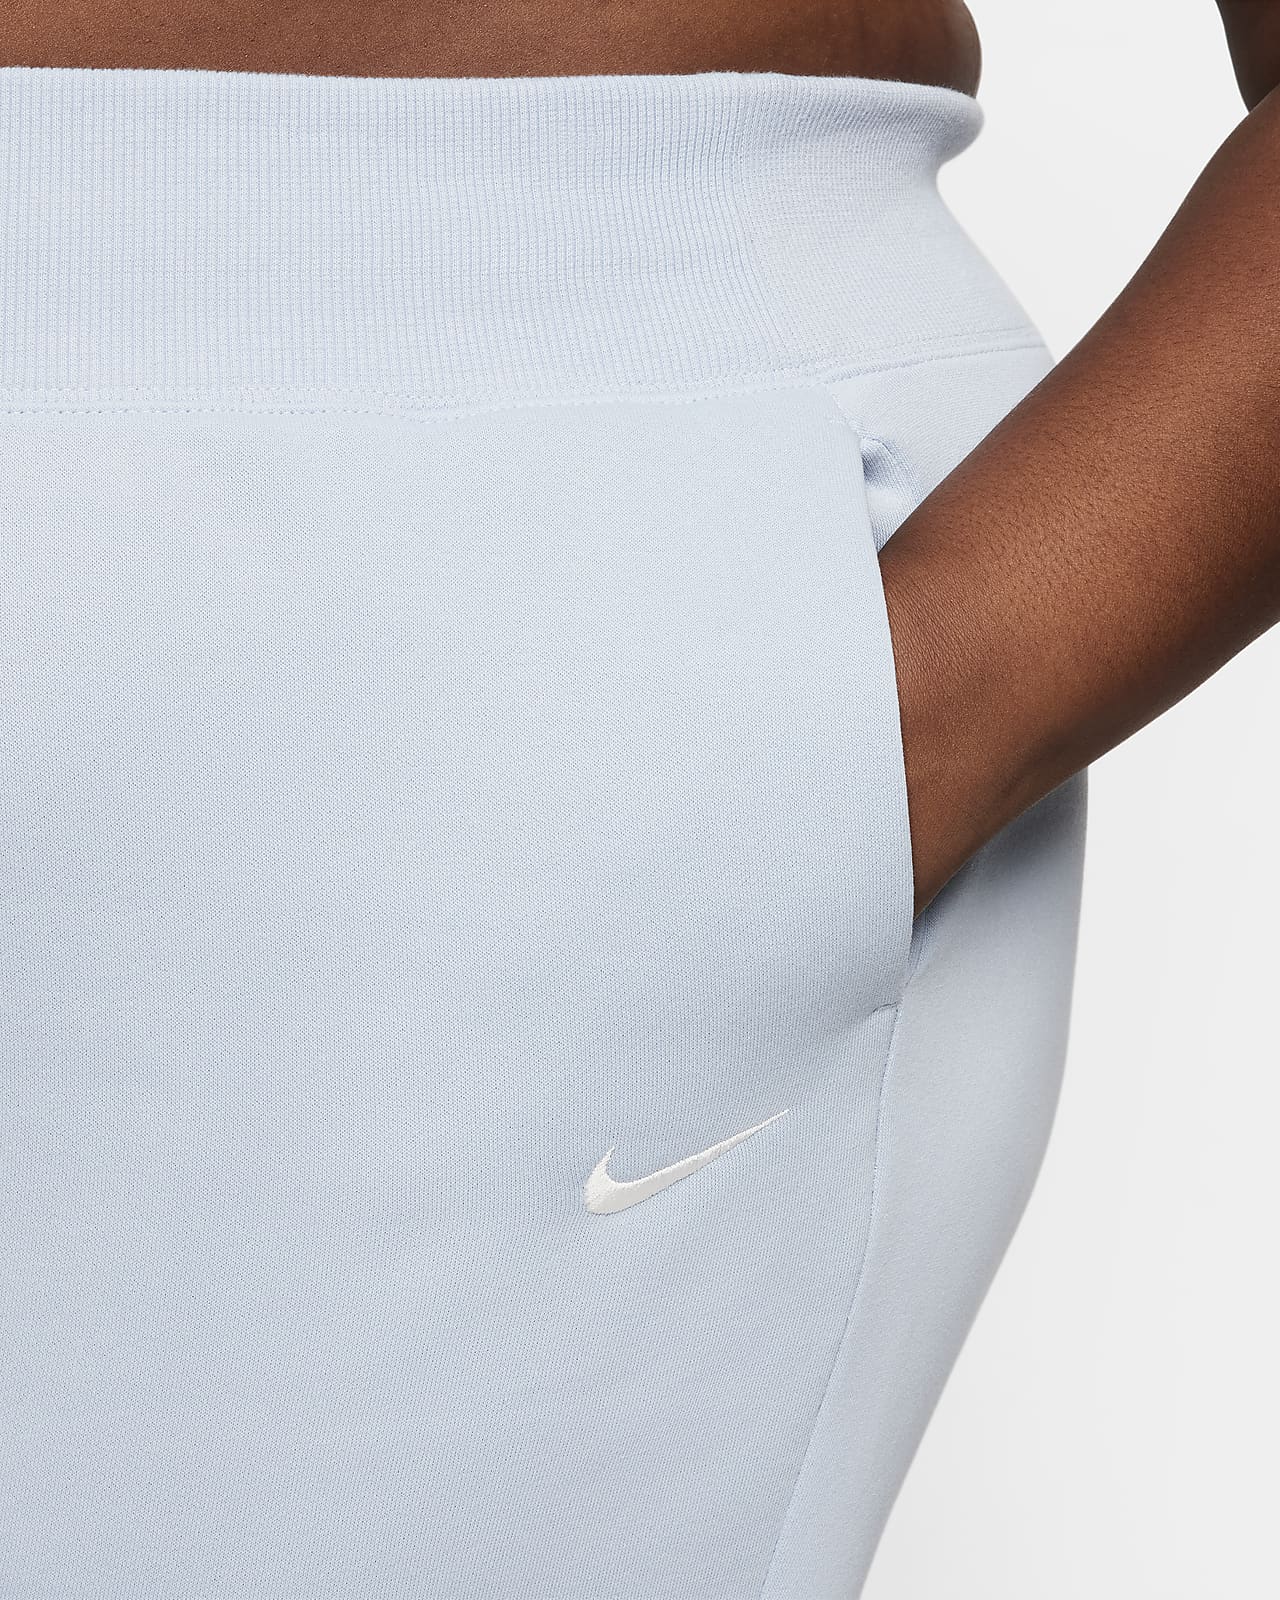 Nike Sportswear Phoenix Fleece Women's High-Waisted Joggers (Plus Size).